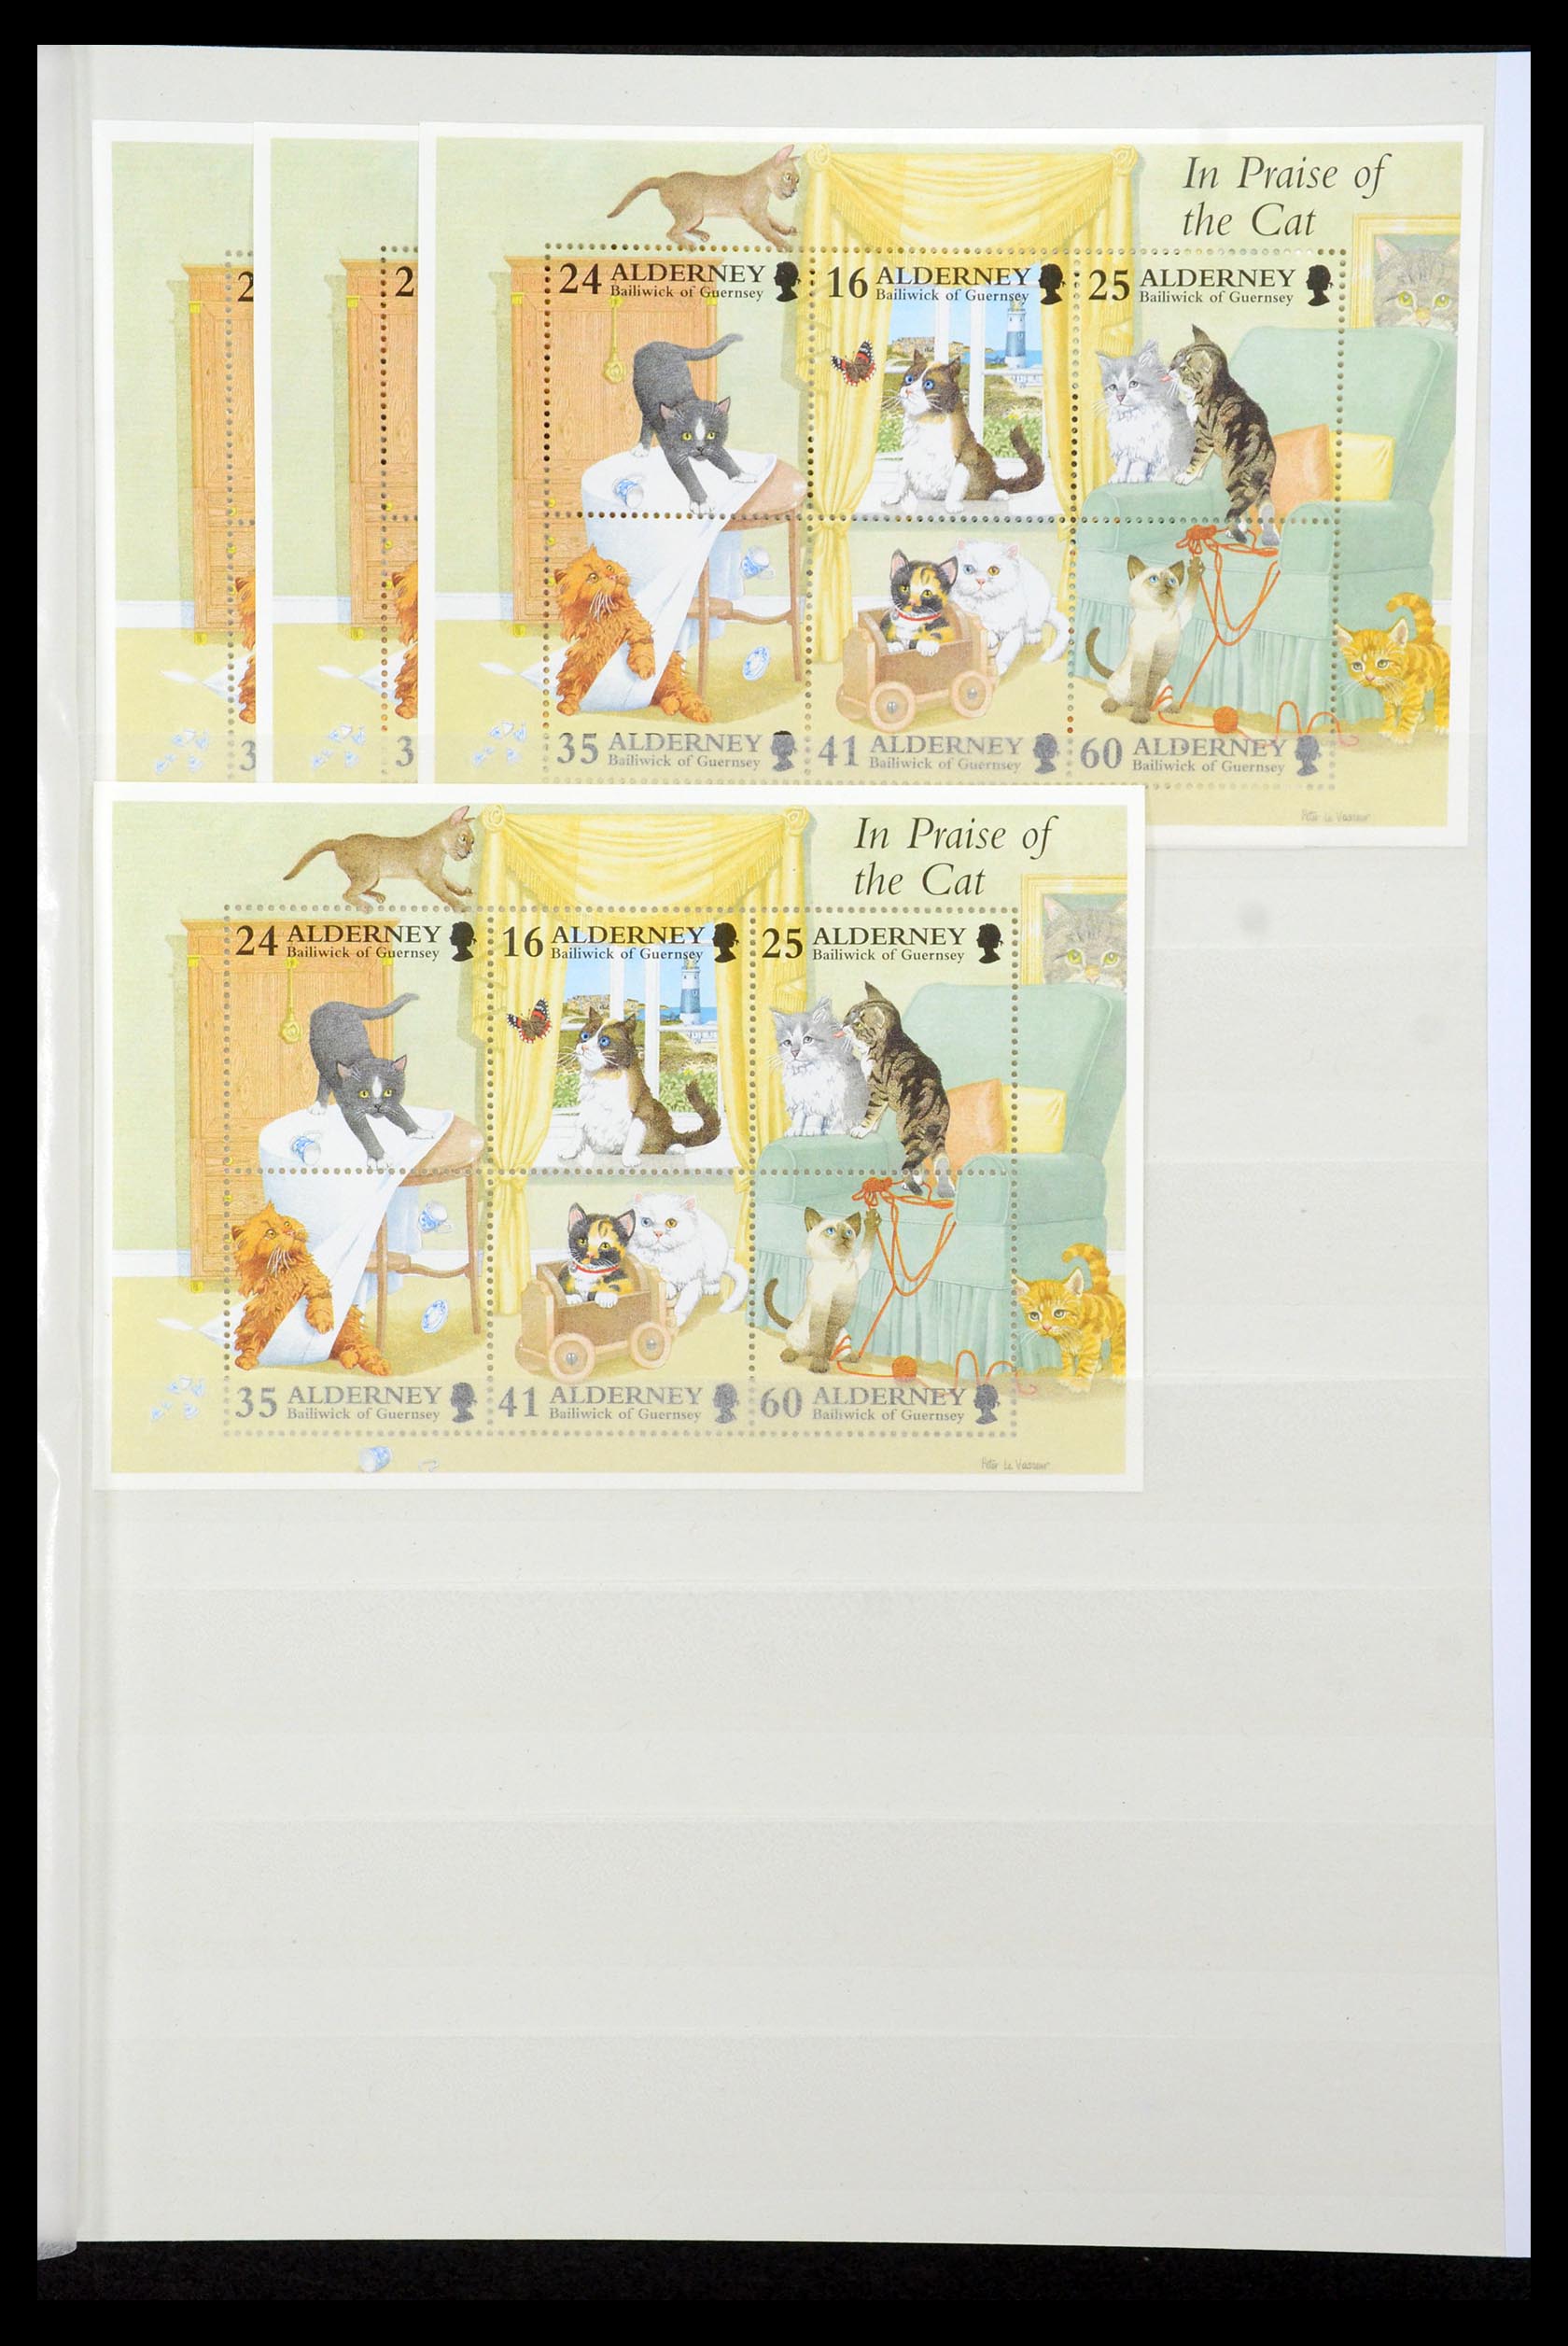 35529 072 - Stamp Collection 35529 Alderney1983-2014!